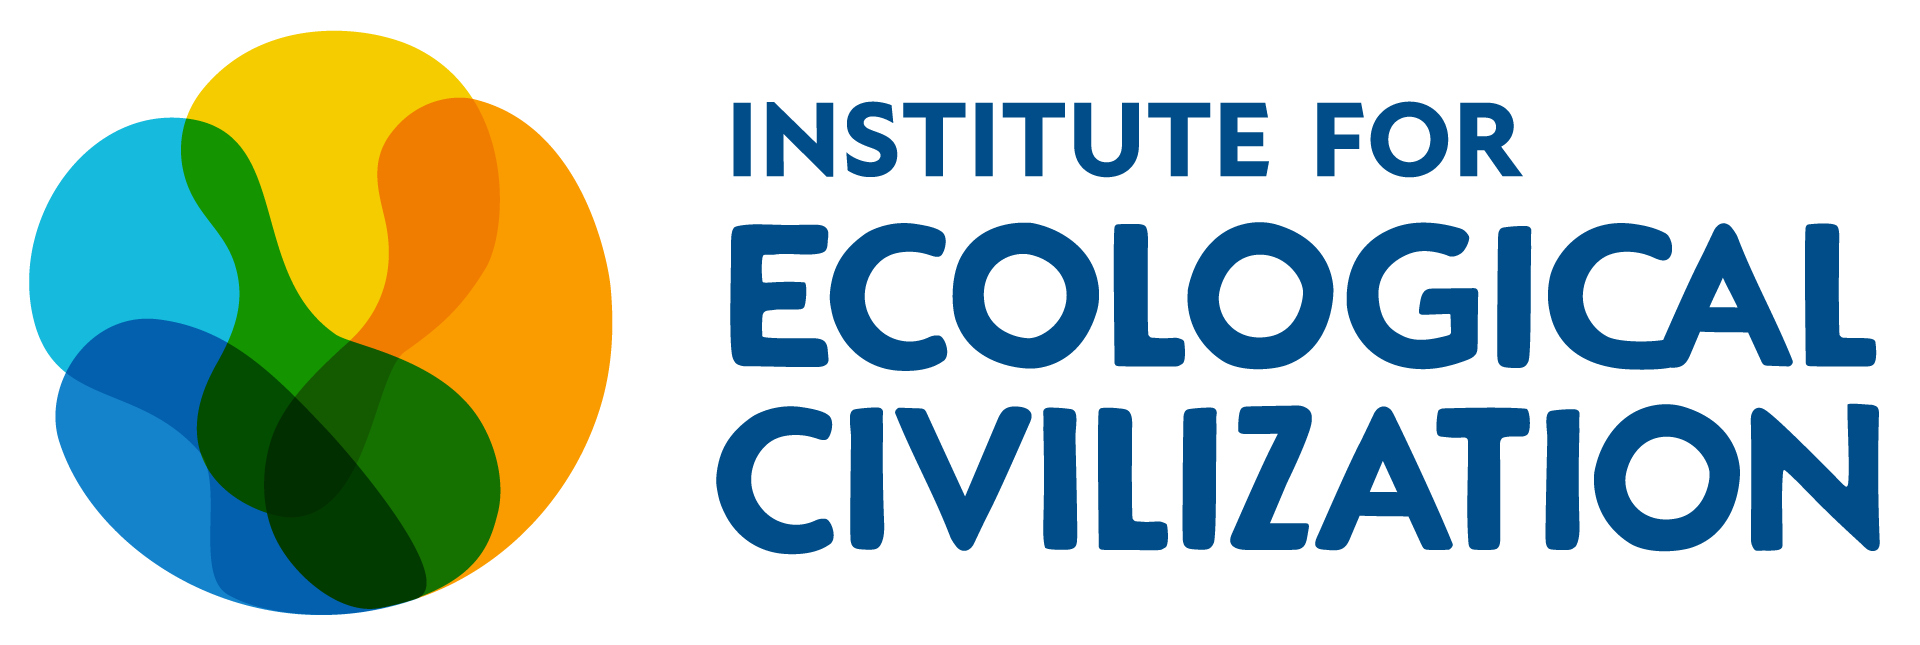 EcoCivDev - Institute for Ecological Civilization